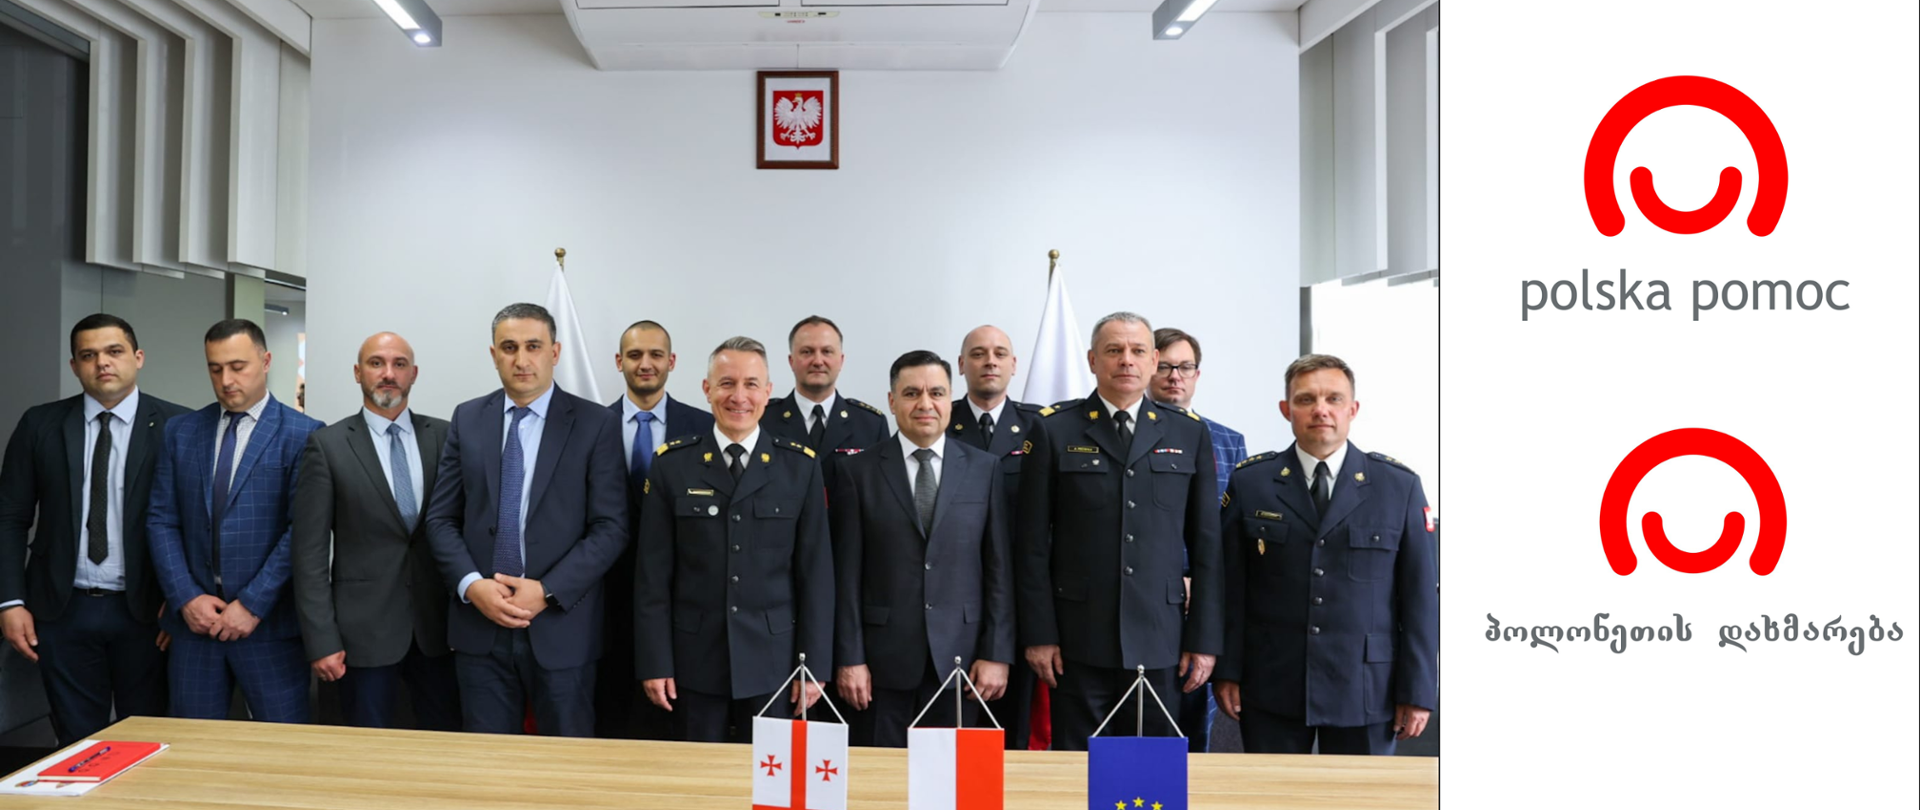 Grupa polskich strażaków oraz gruzińskiej delegacji stoją pozując do zdjęcia, przed nimi na stole flaga Polski, Gruzji i UE, na ścianie za grupą osób wisi portret orła białego